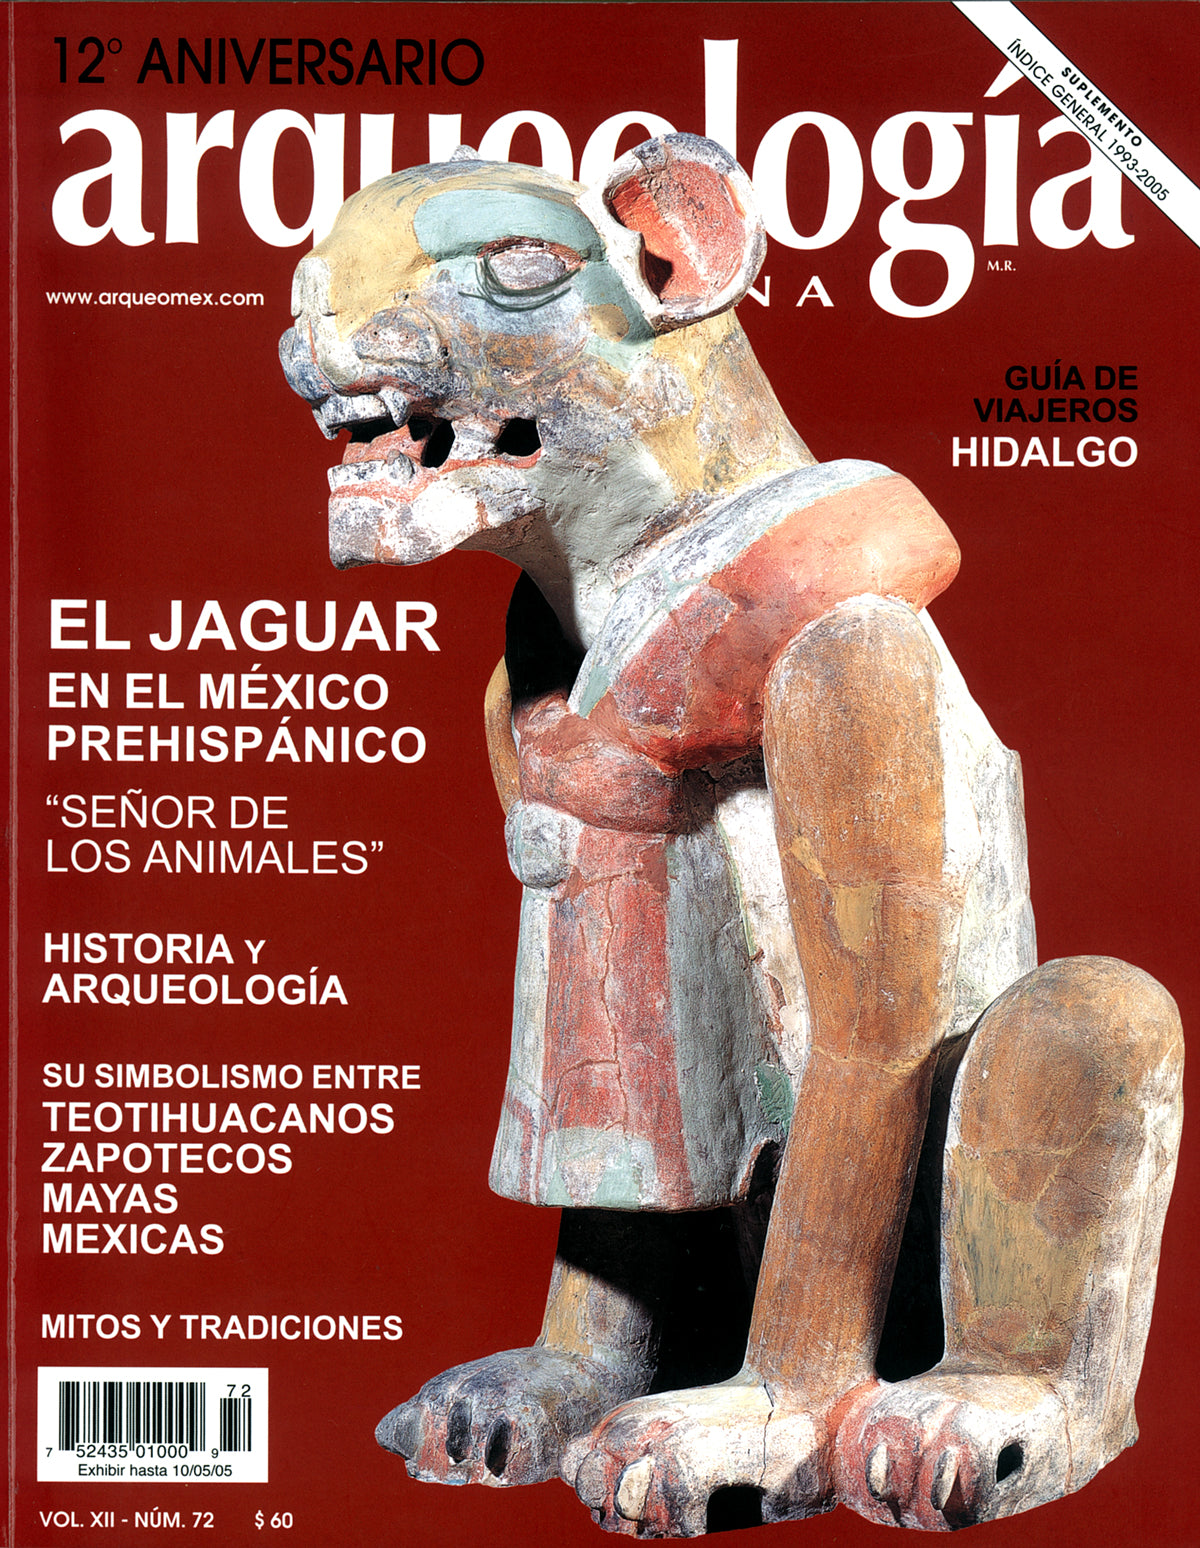 El jaguar en el México prehispánico